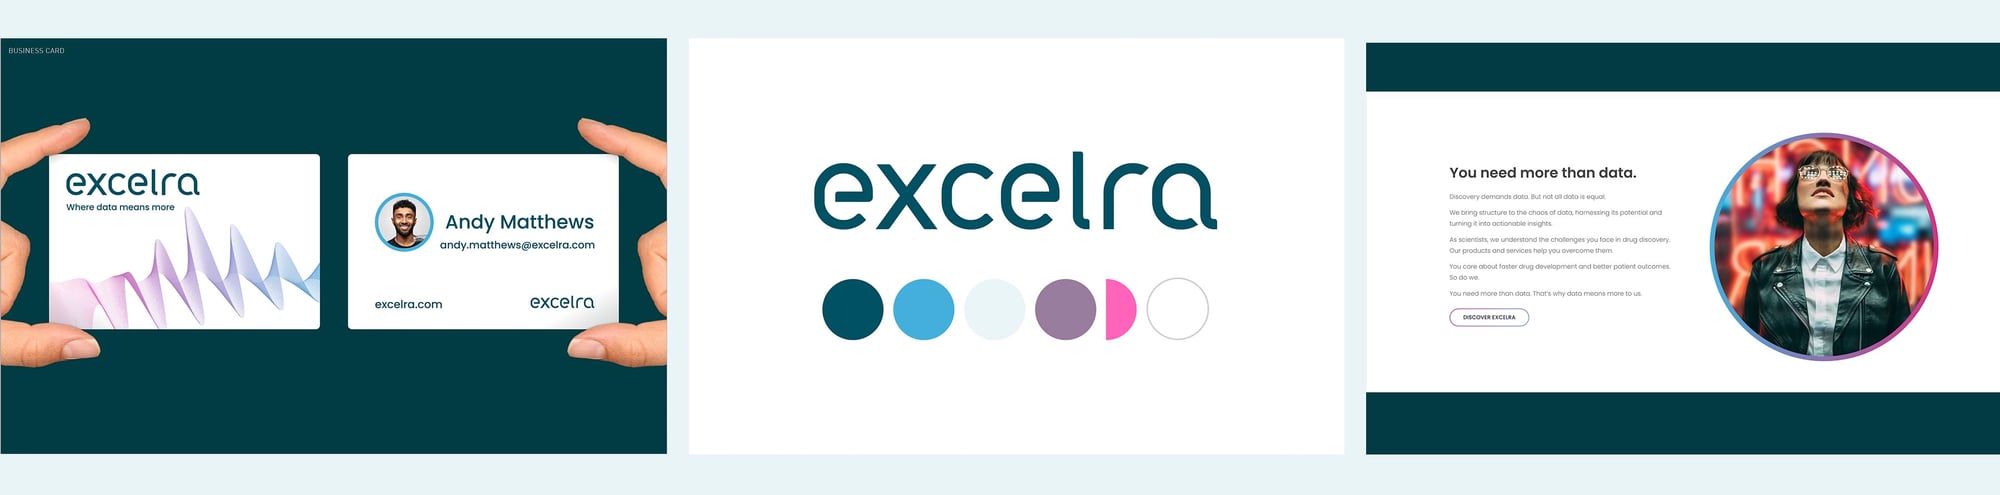 excelra-branding